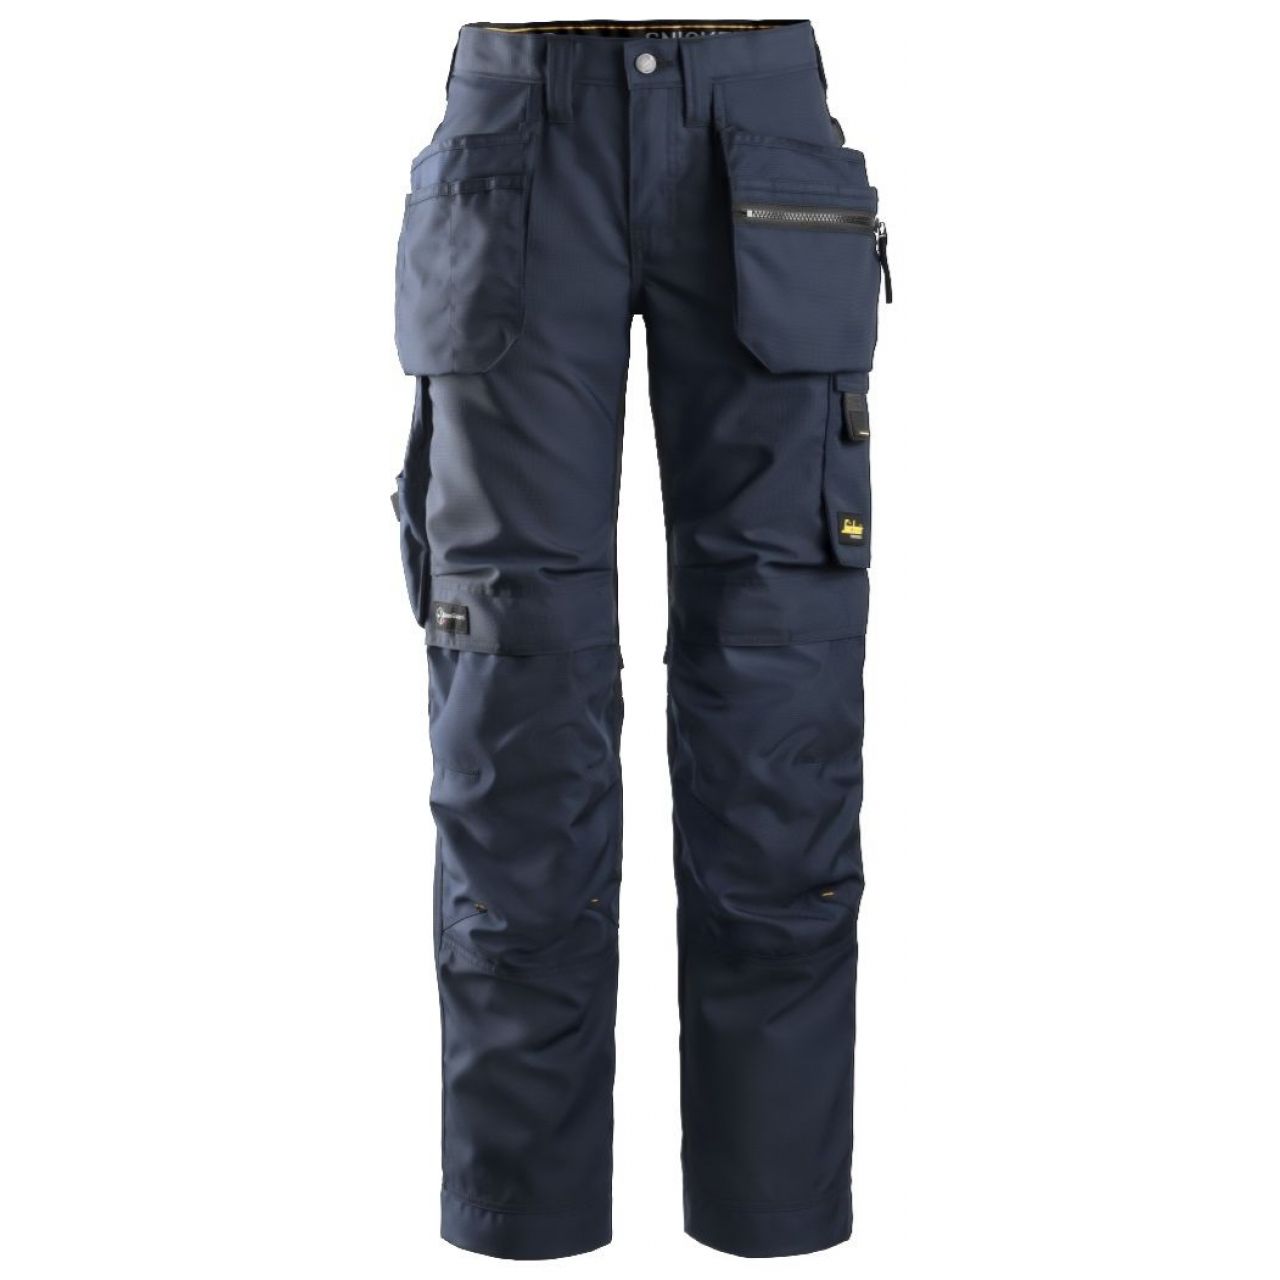 Pantalon de mujer AllroundWork+ con bolsillos flotantes azul marino-negro talla 036